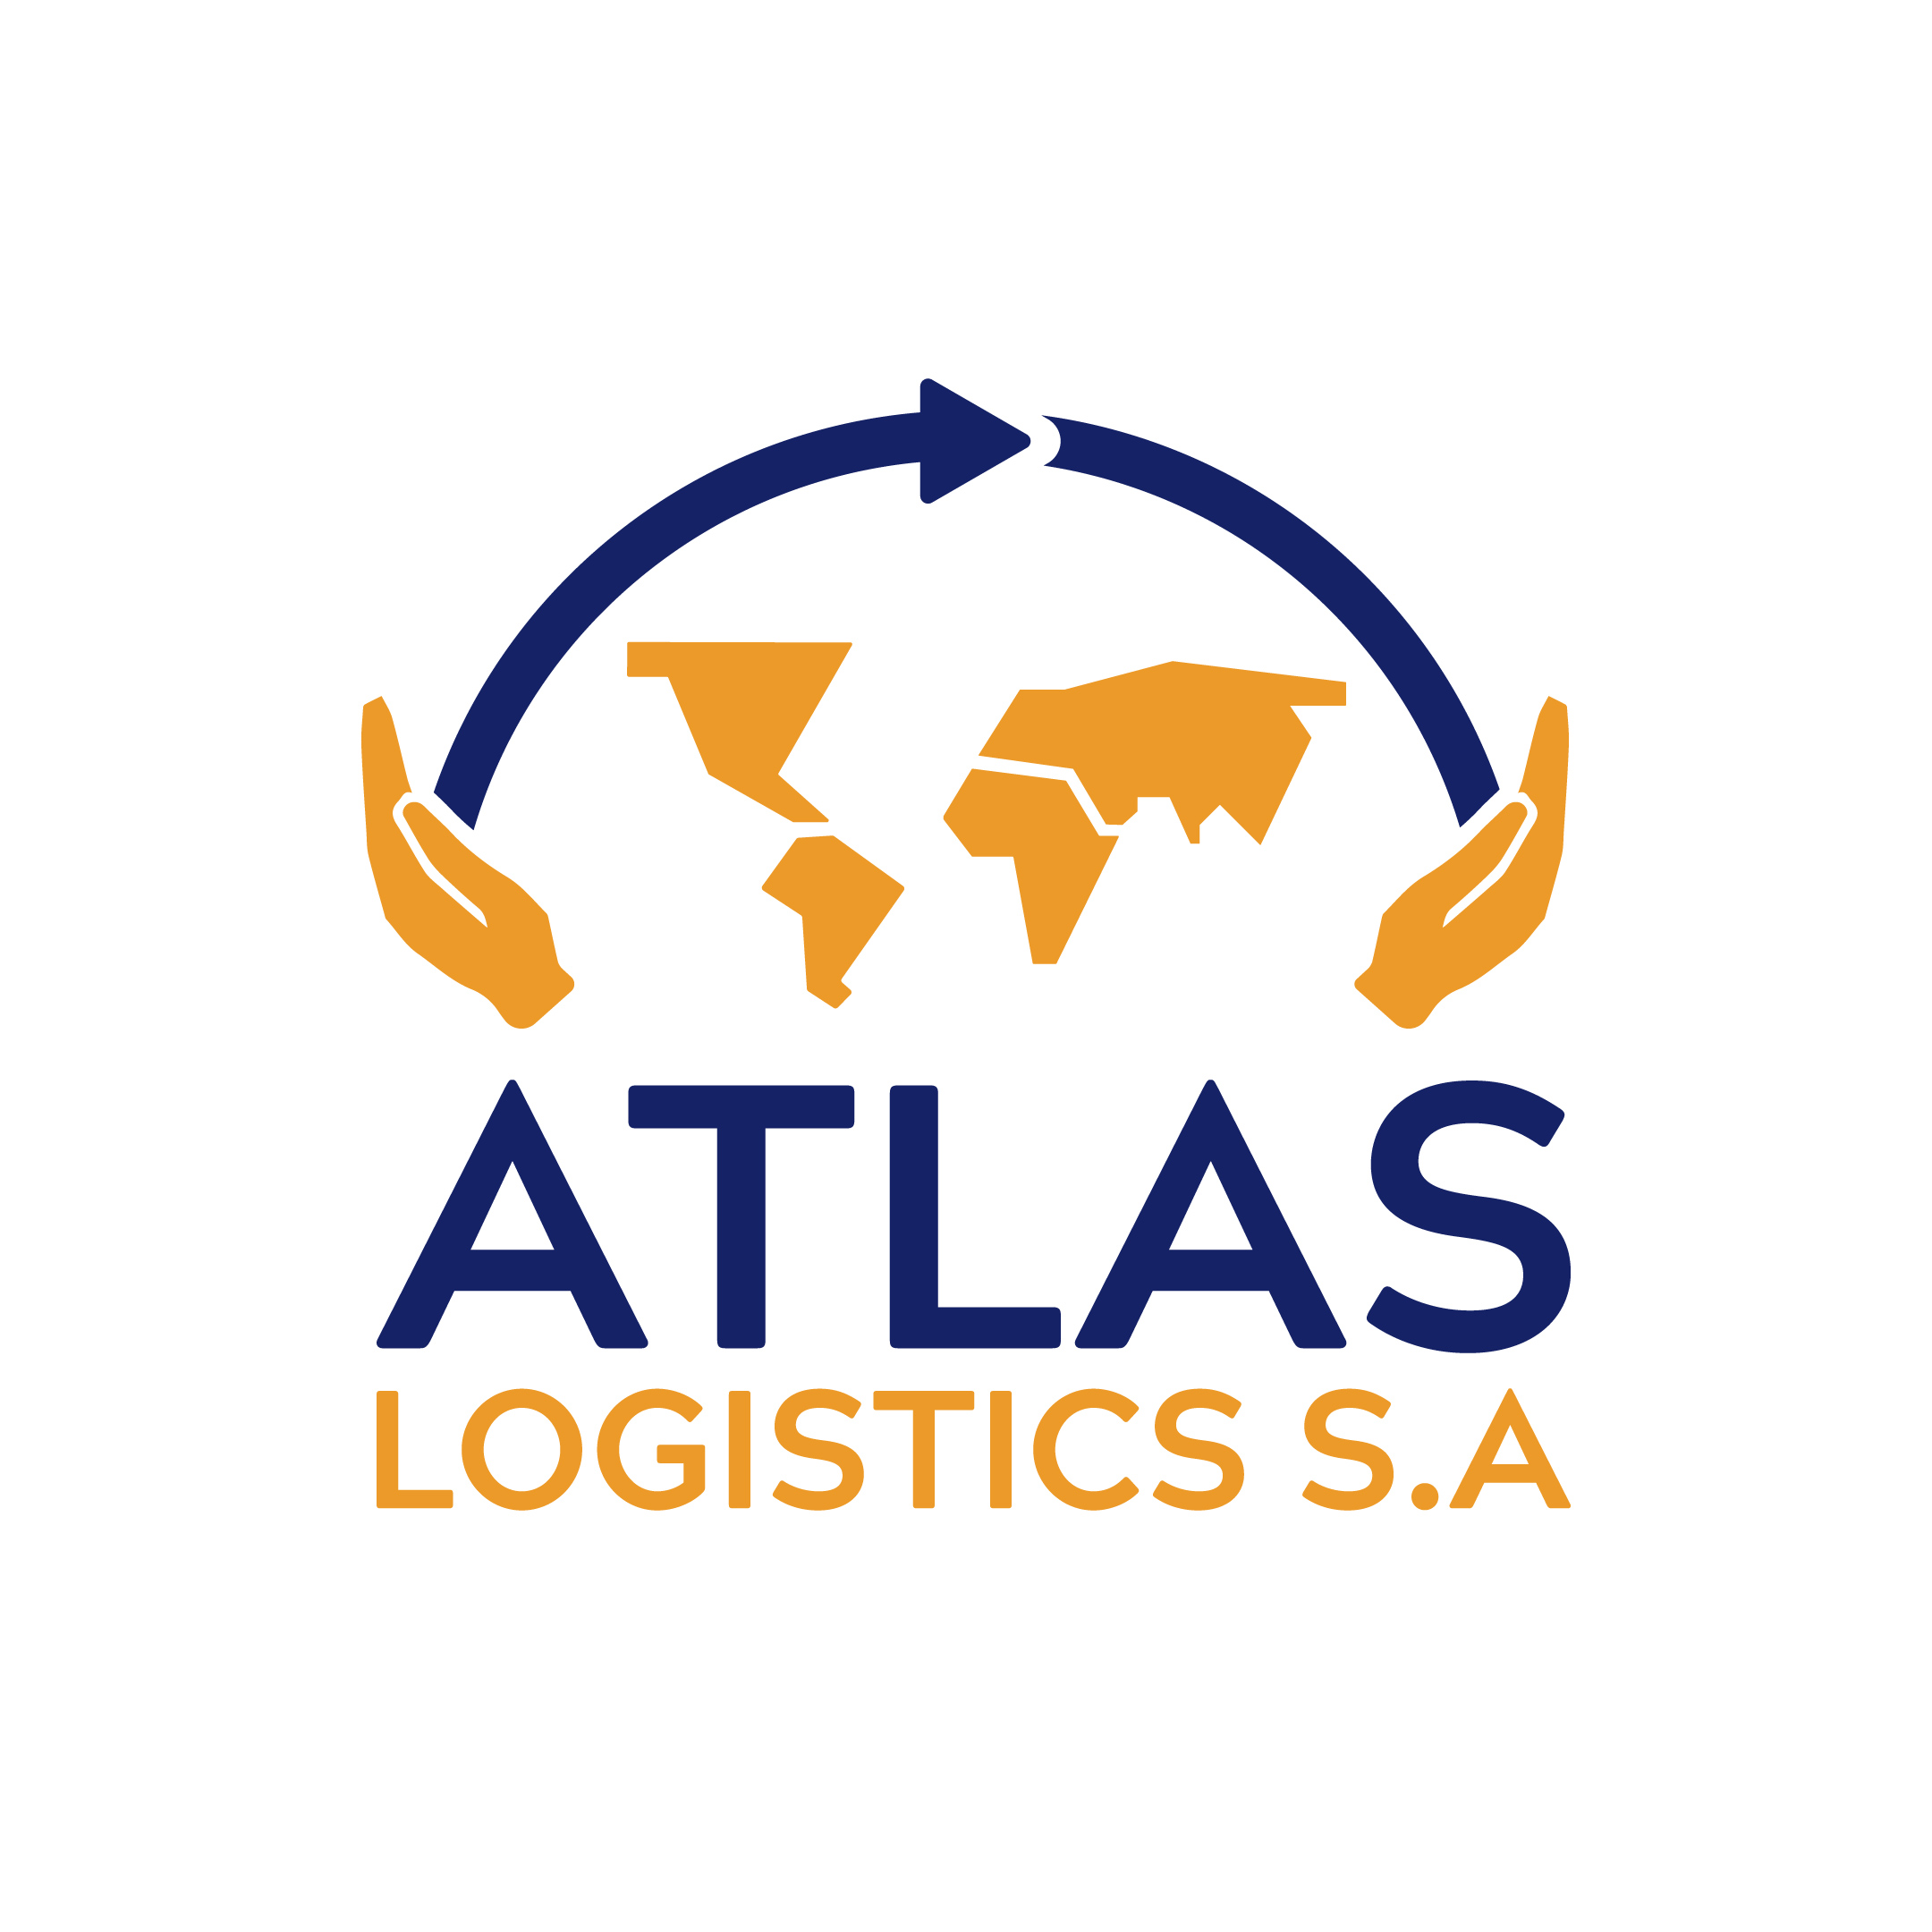 LOGO-Atlas-Logistics-S.A-7b1e7fa8945ae8fcbe7f4c18bb4d21bd